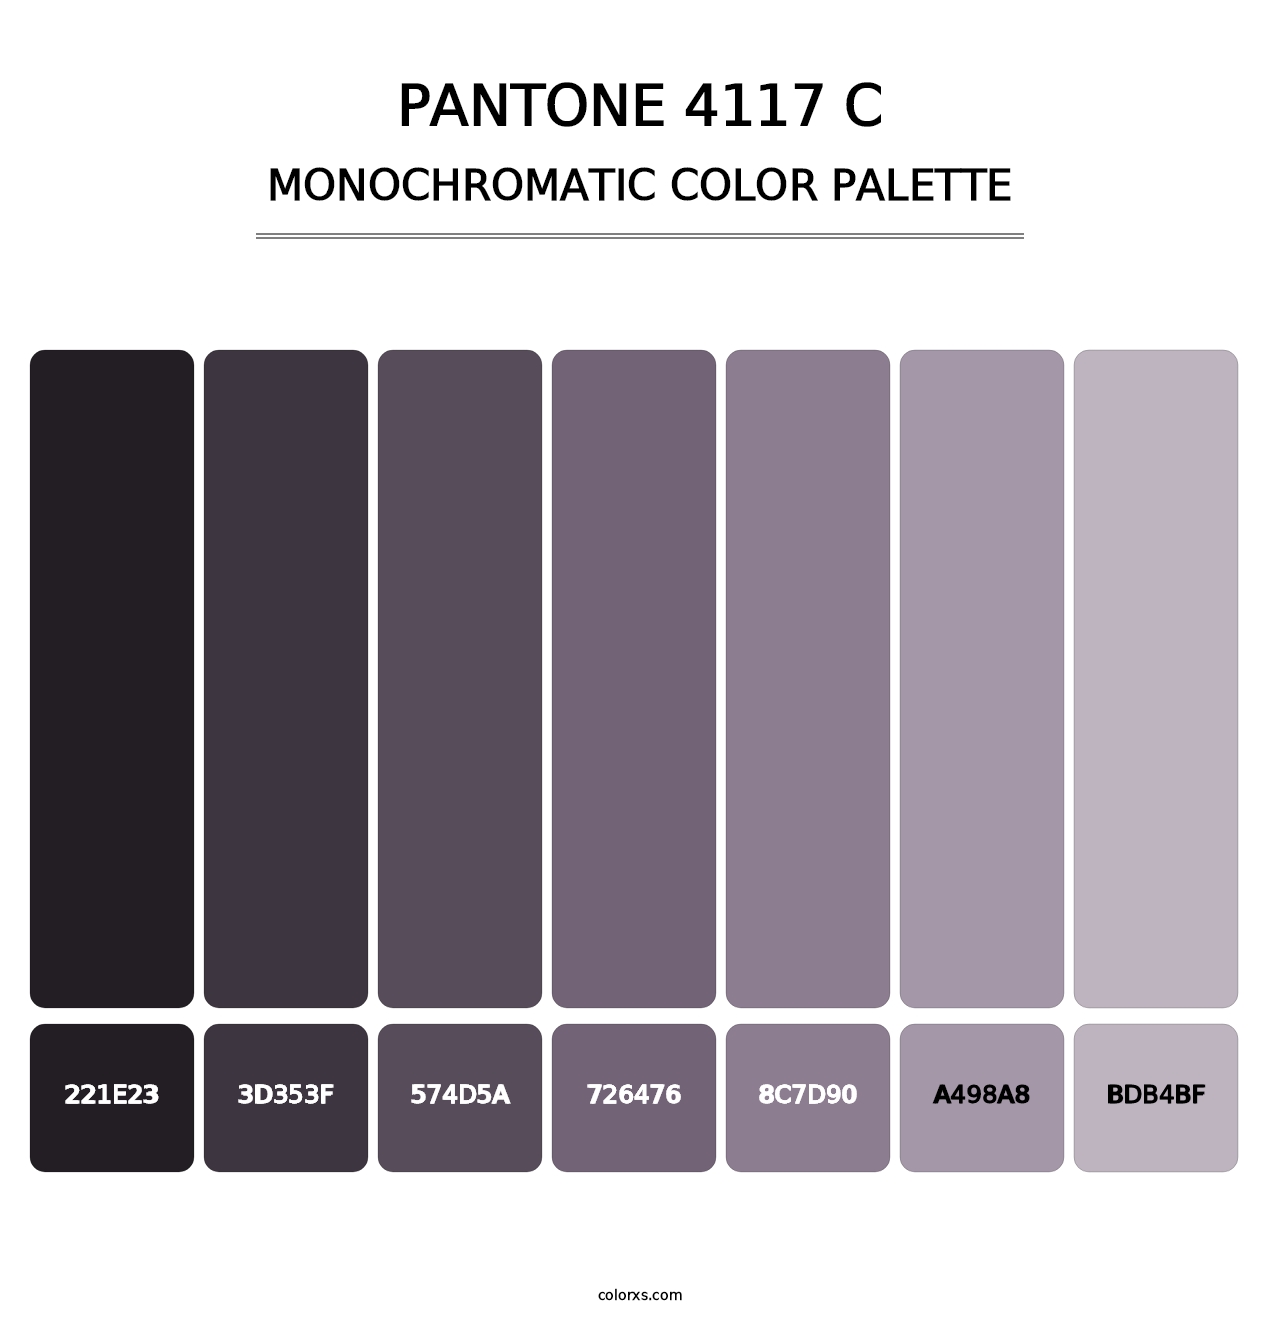 PANTONE 4117 C - Monochromatic Color Palette